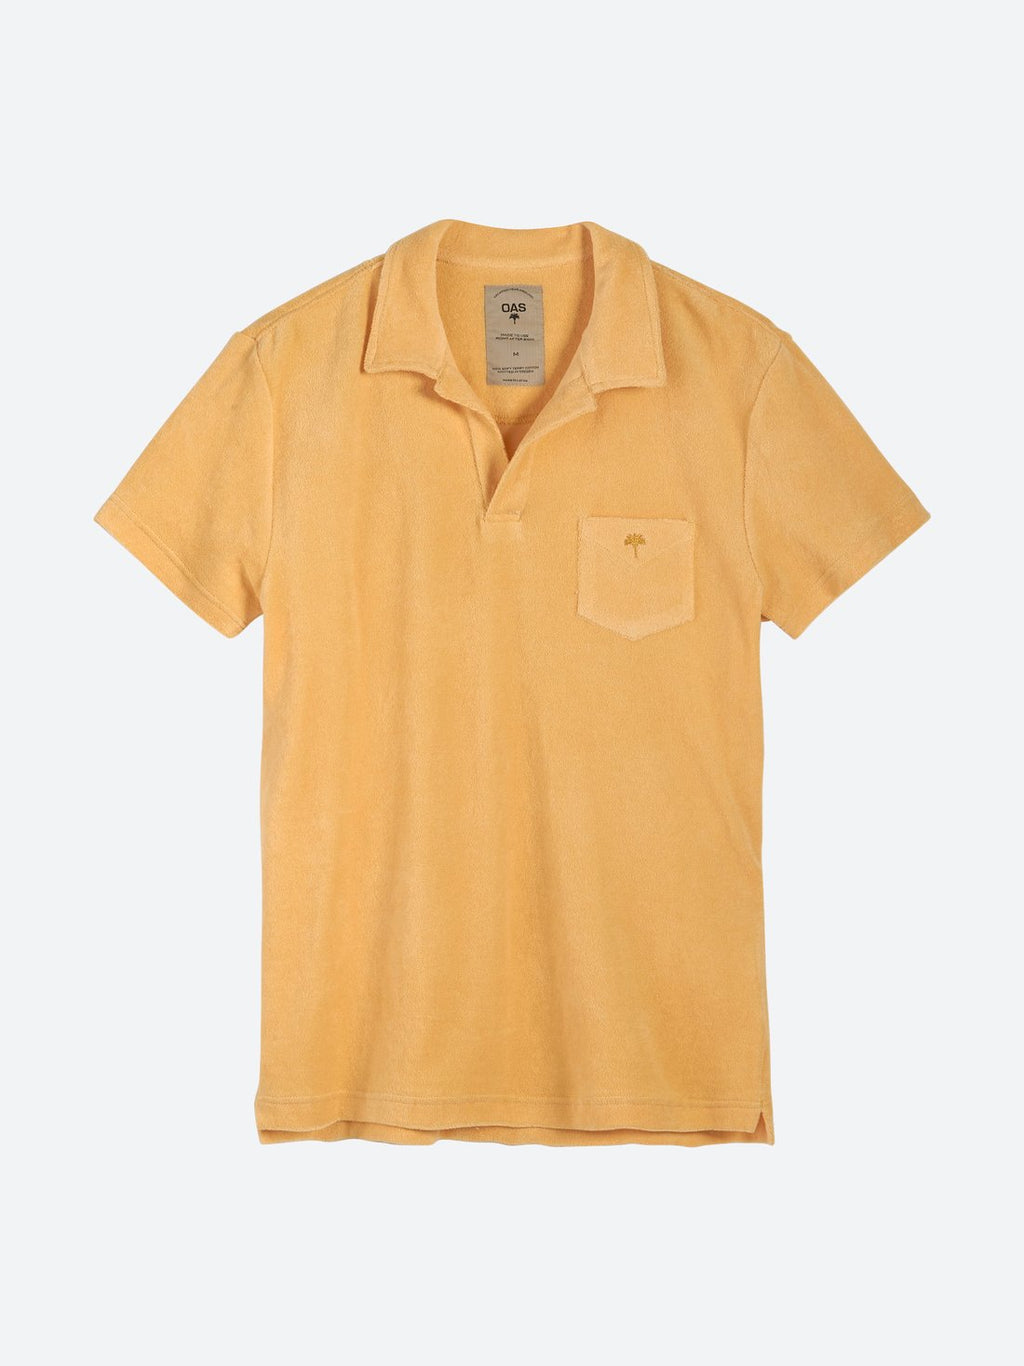 Oas Peach Terry Shirt